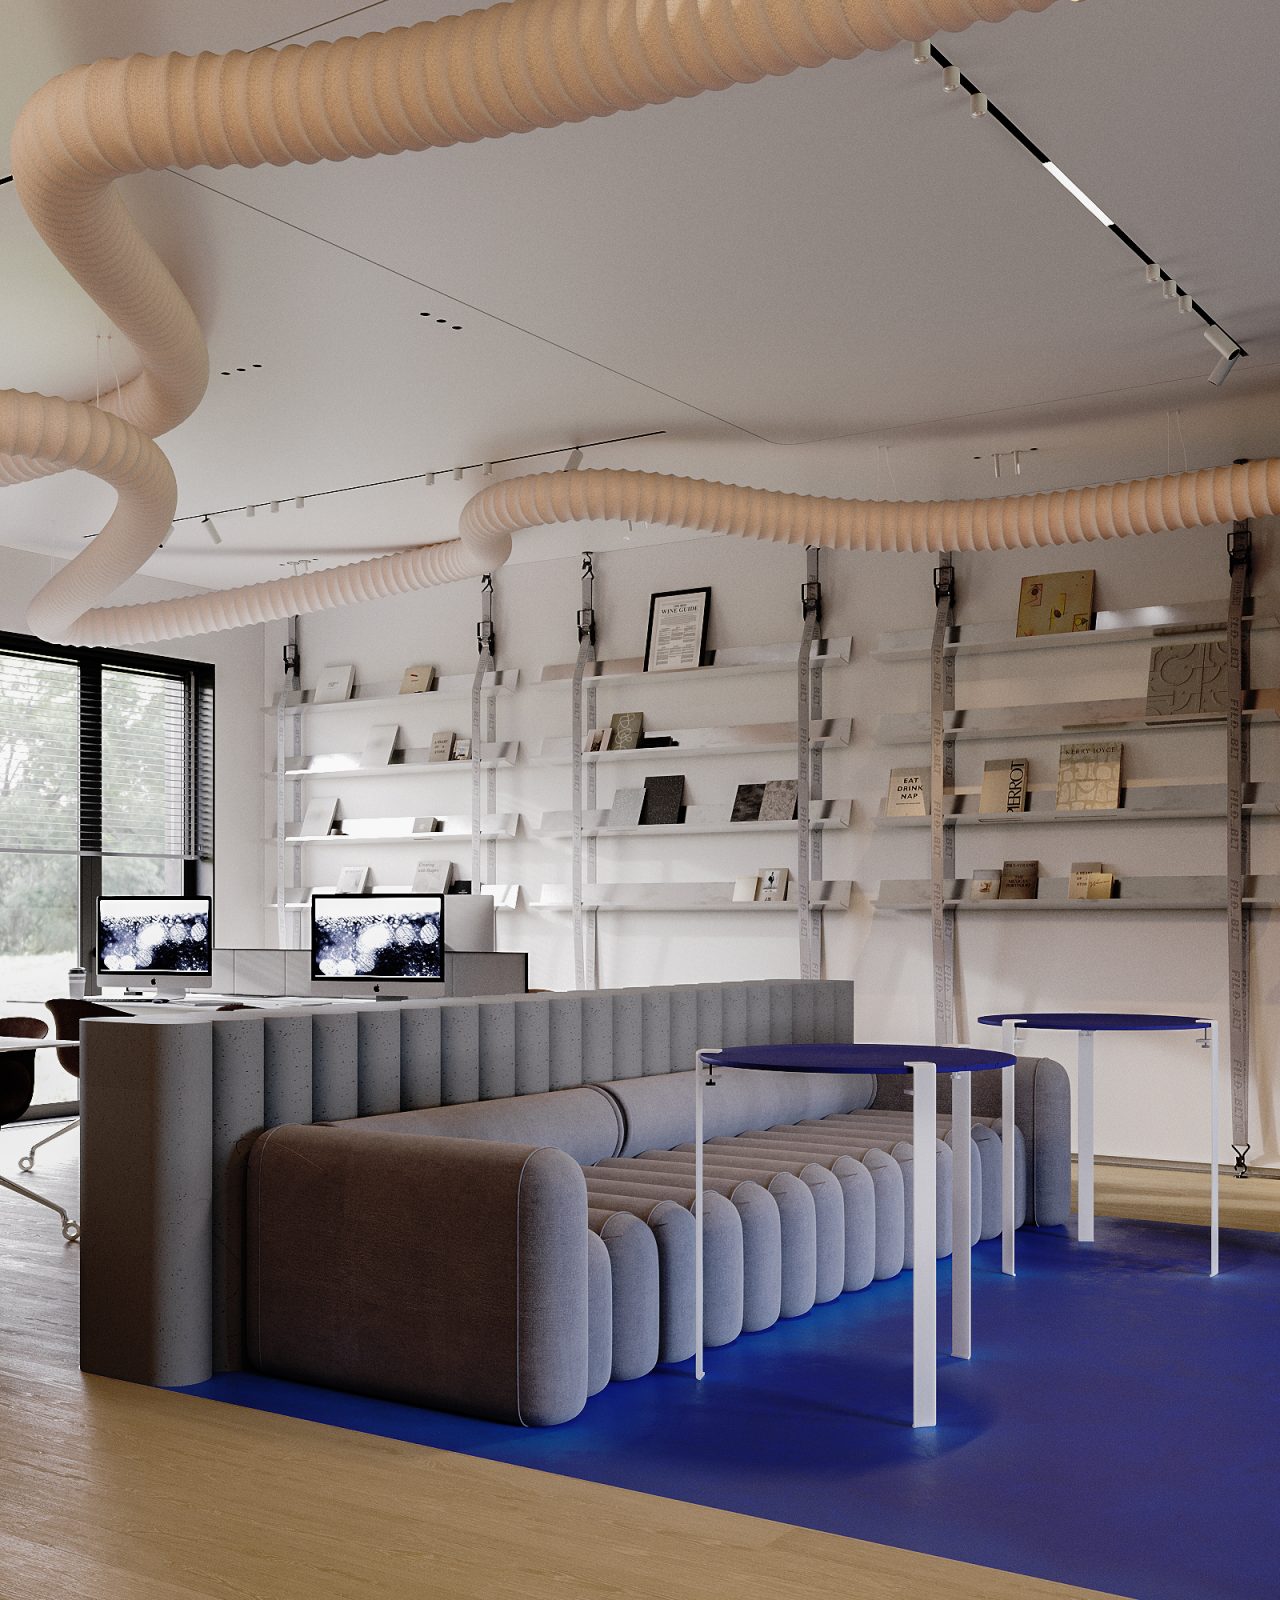 Журнал INTERIOR DESIGN включив дизайн офісу від ZIKZAK Architects до кращих проєктів нових робочих просторів зі всього світу 3 1